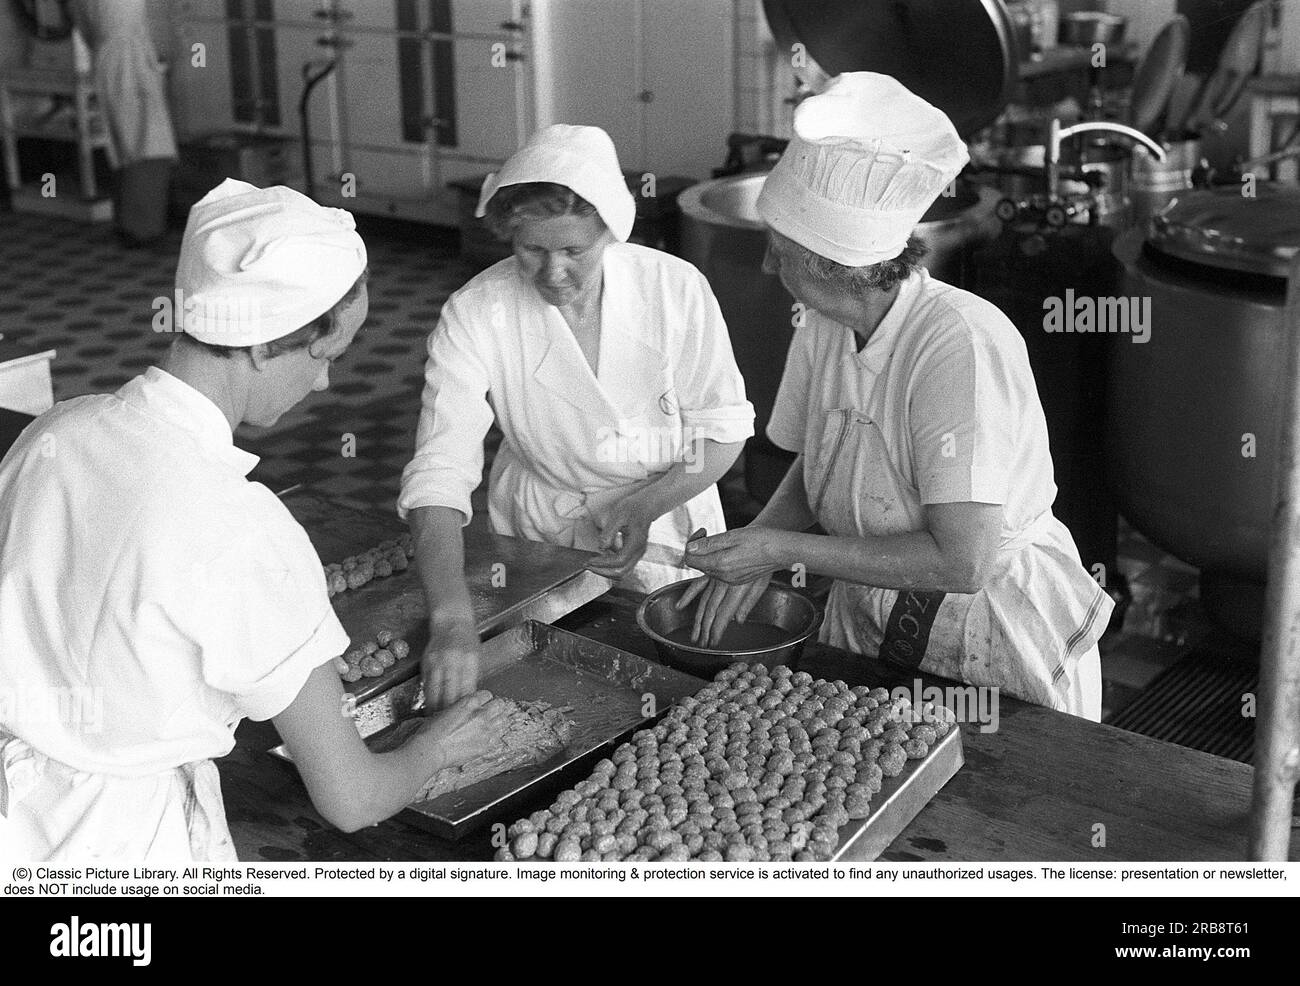 Il grande magazzino NK di Stoccolma nel 1954. Ecco una foto della cucina del grande magazzino dove cucinano per il loro personale. Questo giorno, le polpette sono nel menu, 8.000 pezzi devono essere fatti e sembra che vada bene e tre si aiutino a vicenda con il monotono lavoro di modellare le polpette alla stessa dimensione. Svezia 1954. Kristoffersson rif. 2A-33 Foto Stock